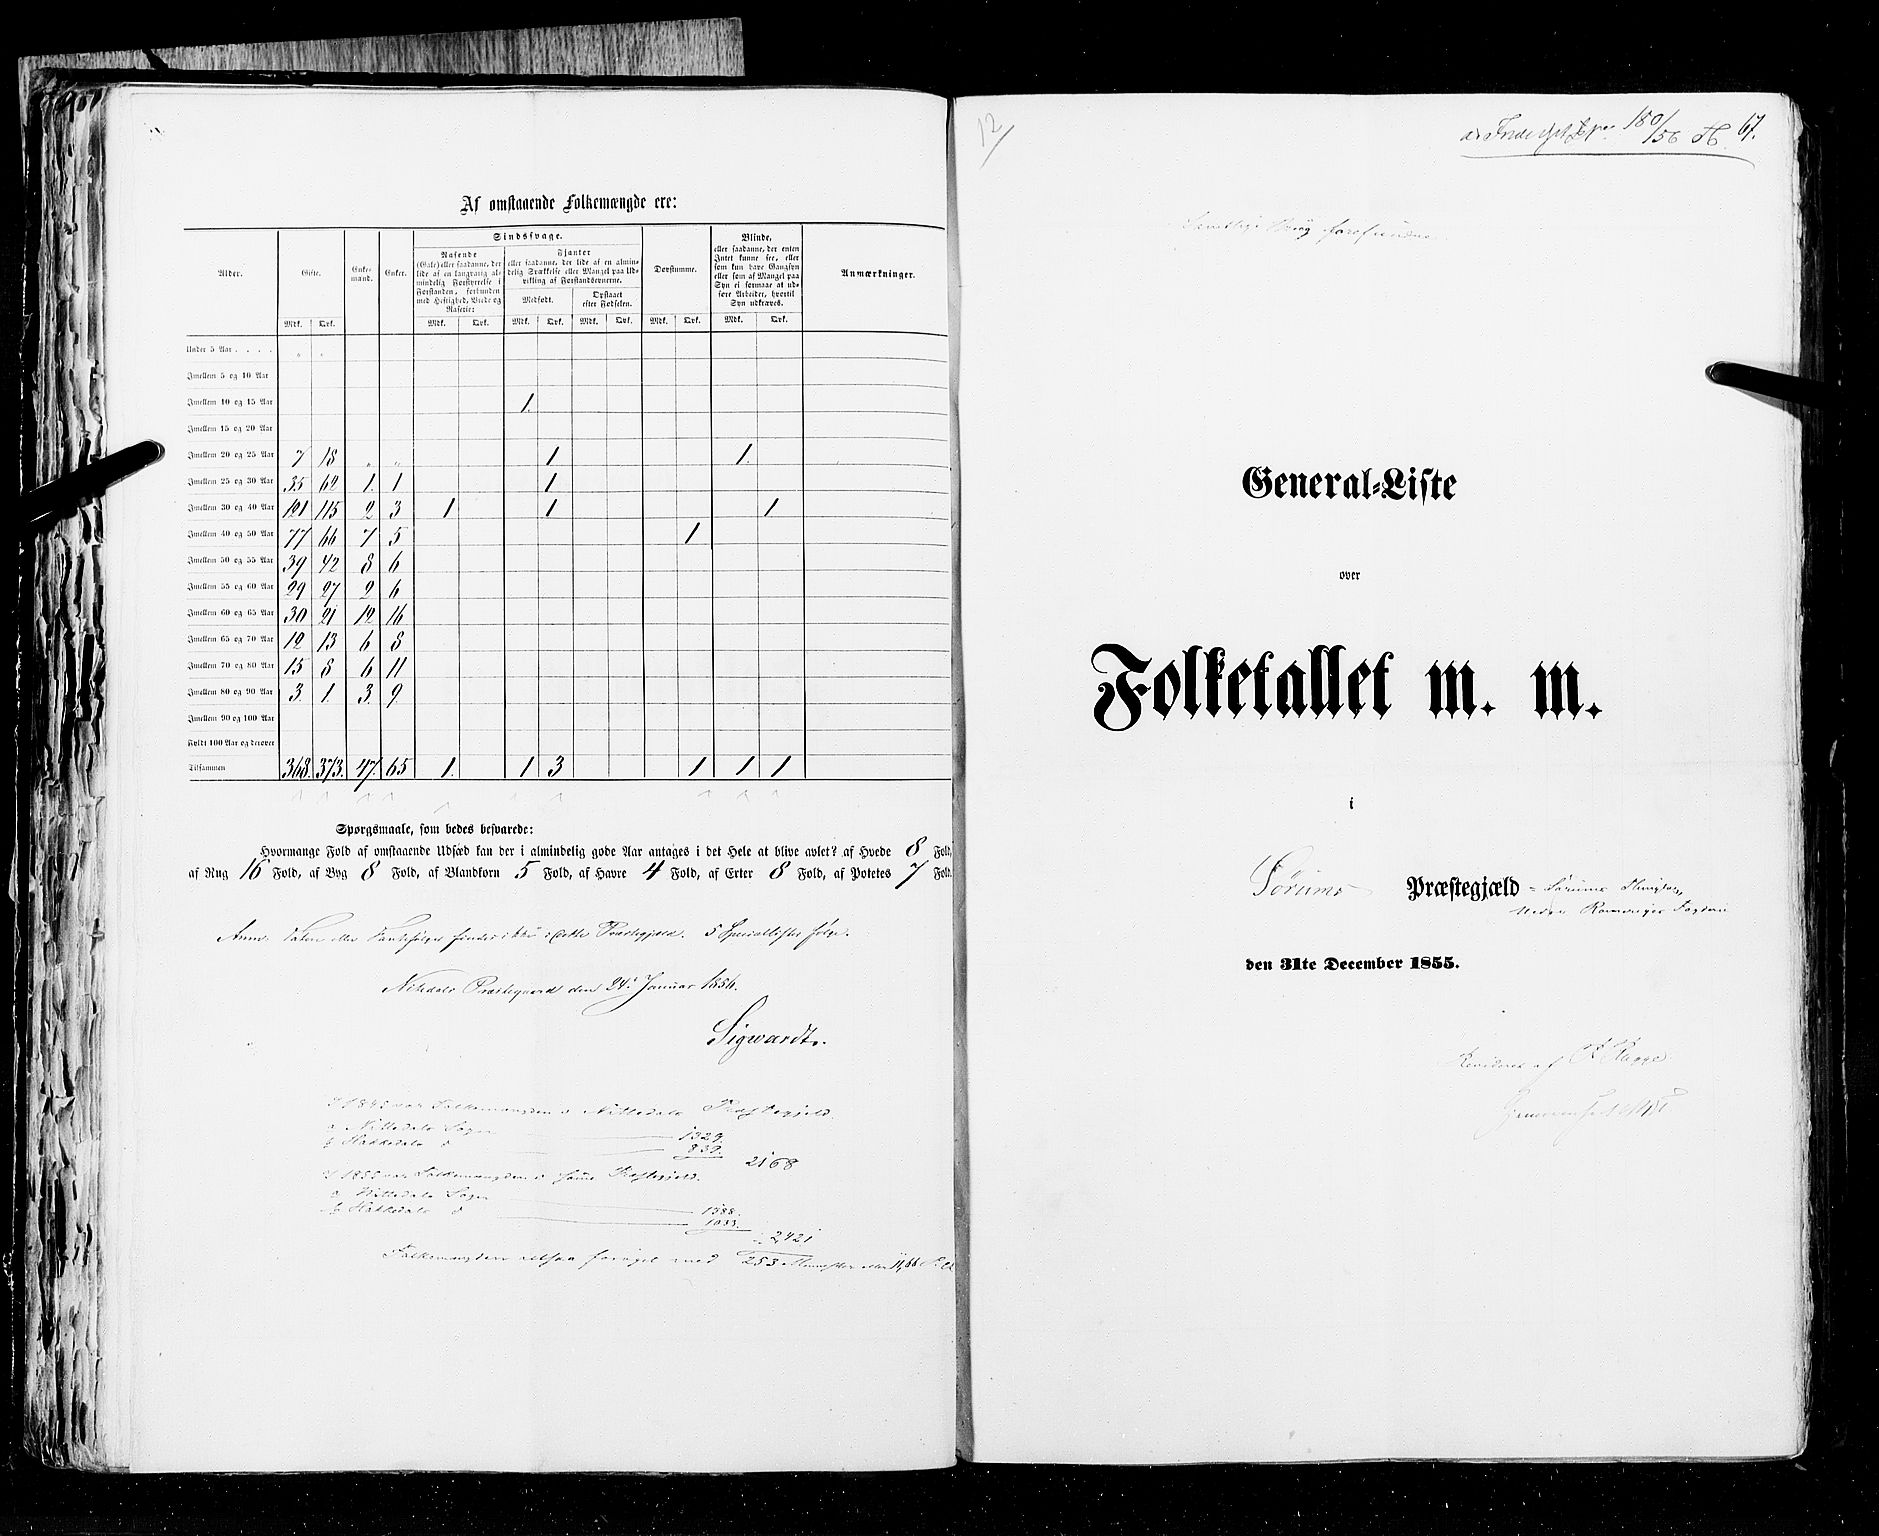 RA, Folketellingen 1855, bind 1: Akershus amt, Smålenenes amt og Hedemarken amt, 1855, s. 67